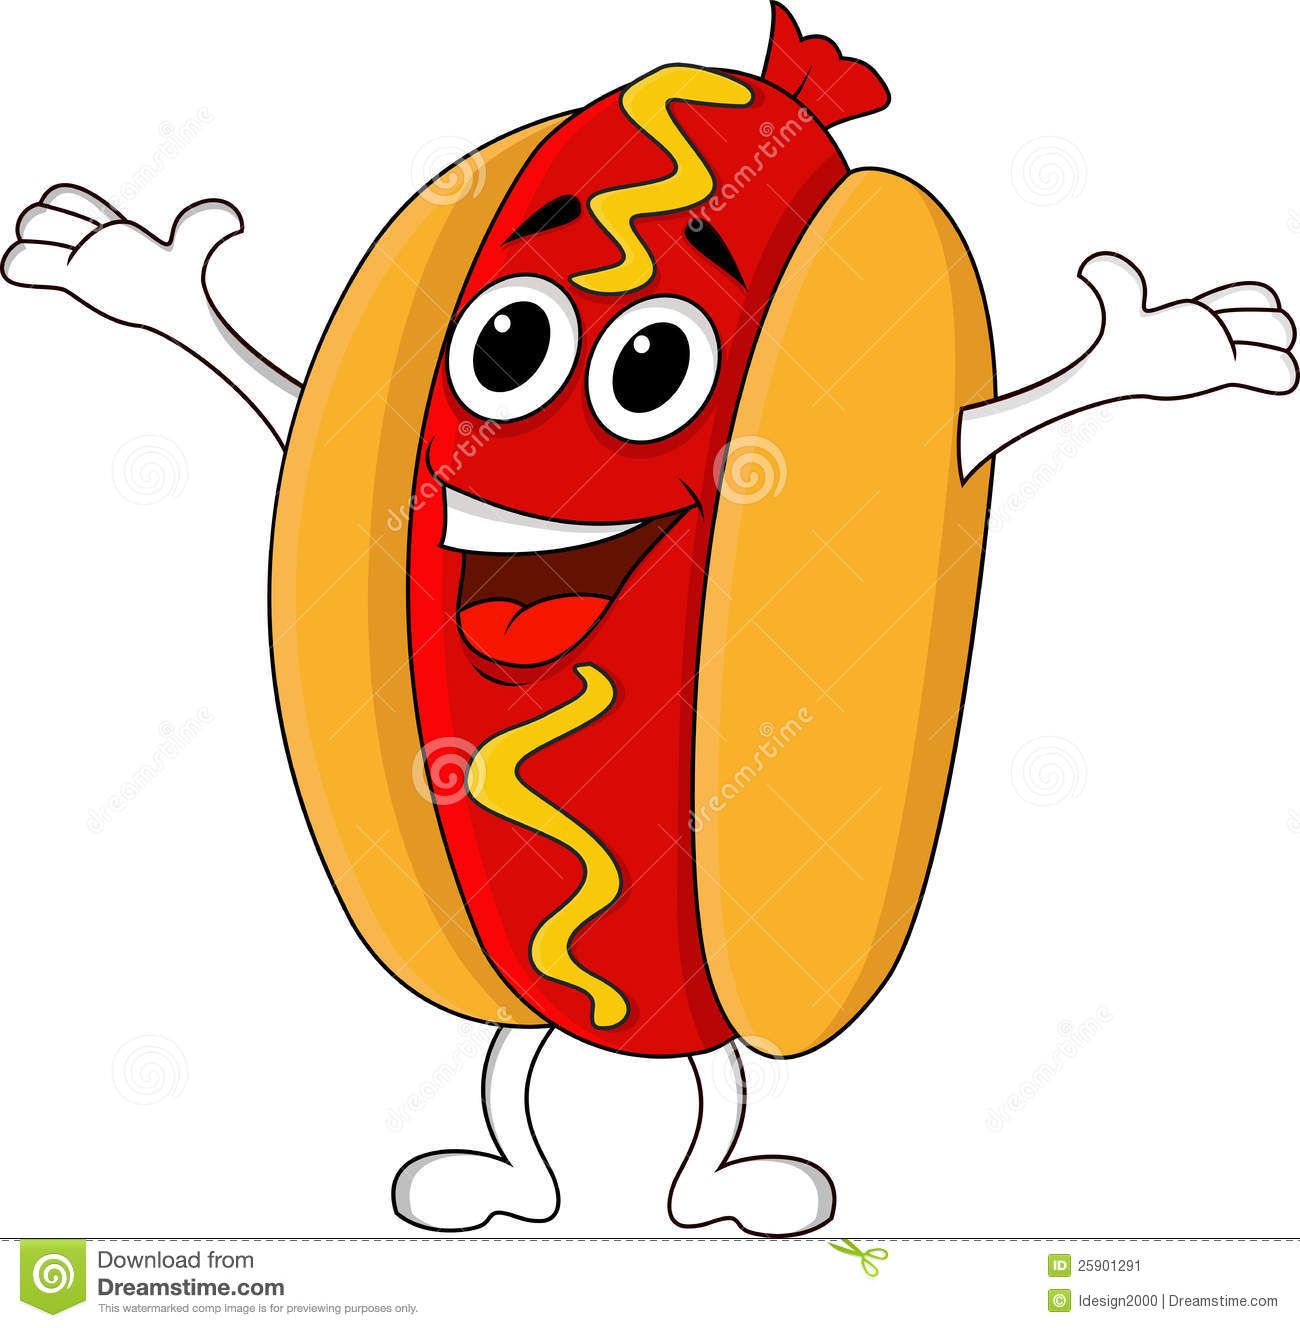 Animated hot dog